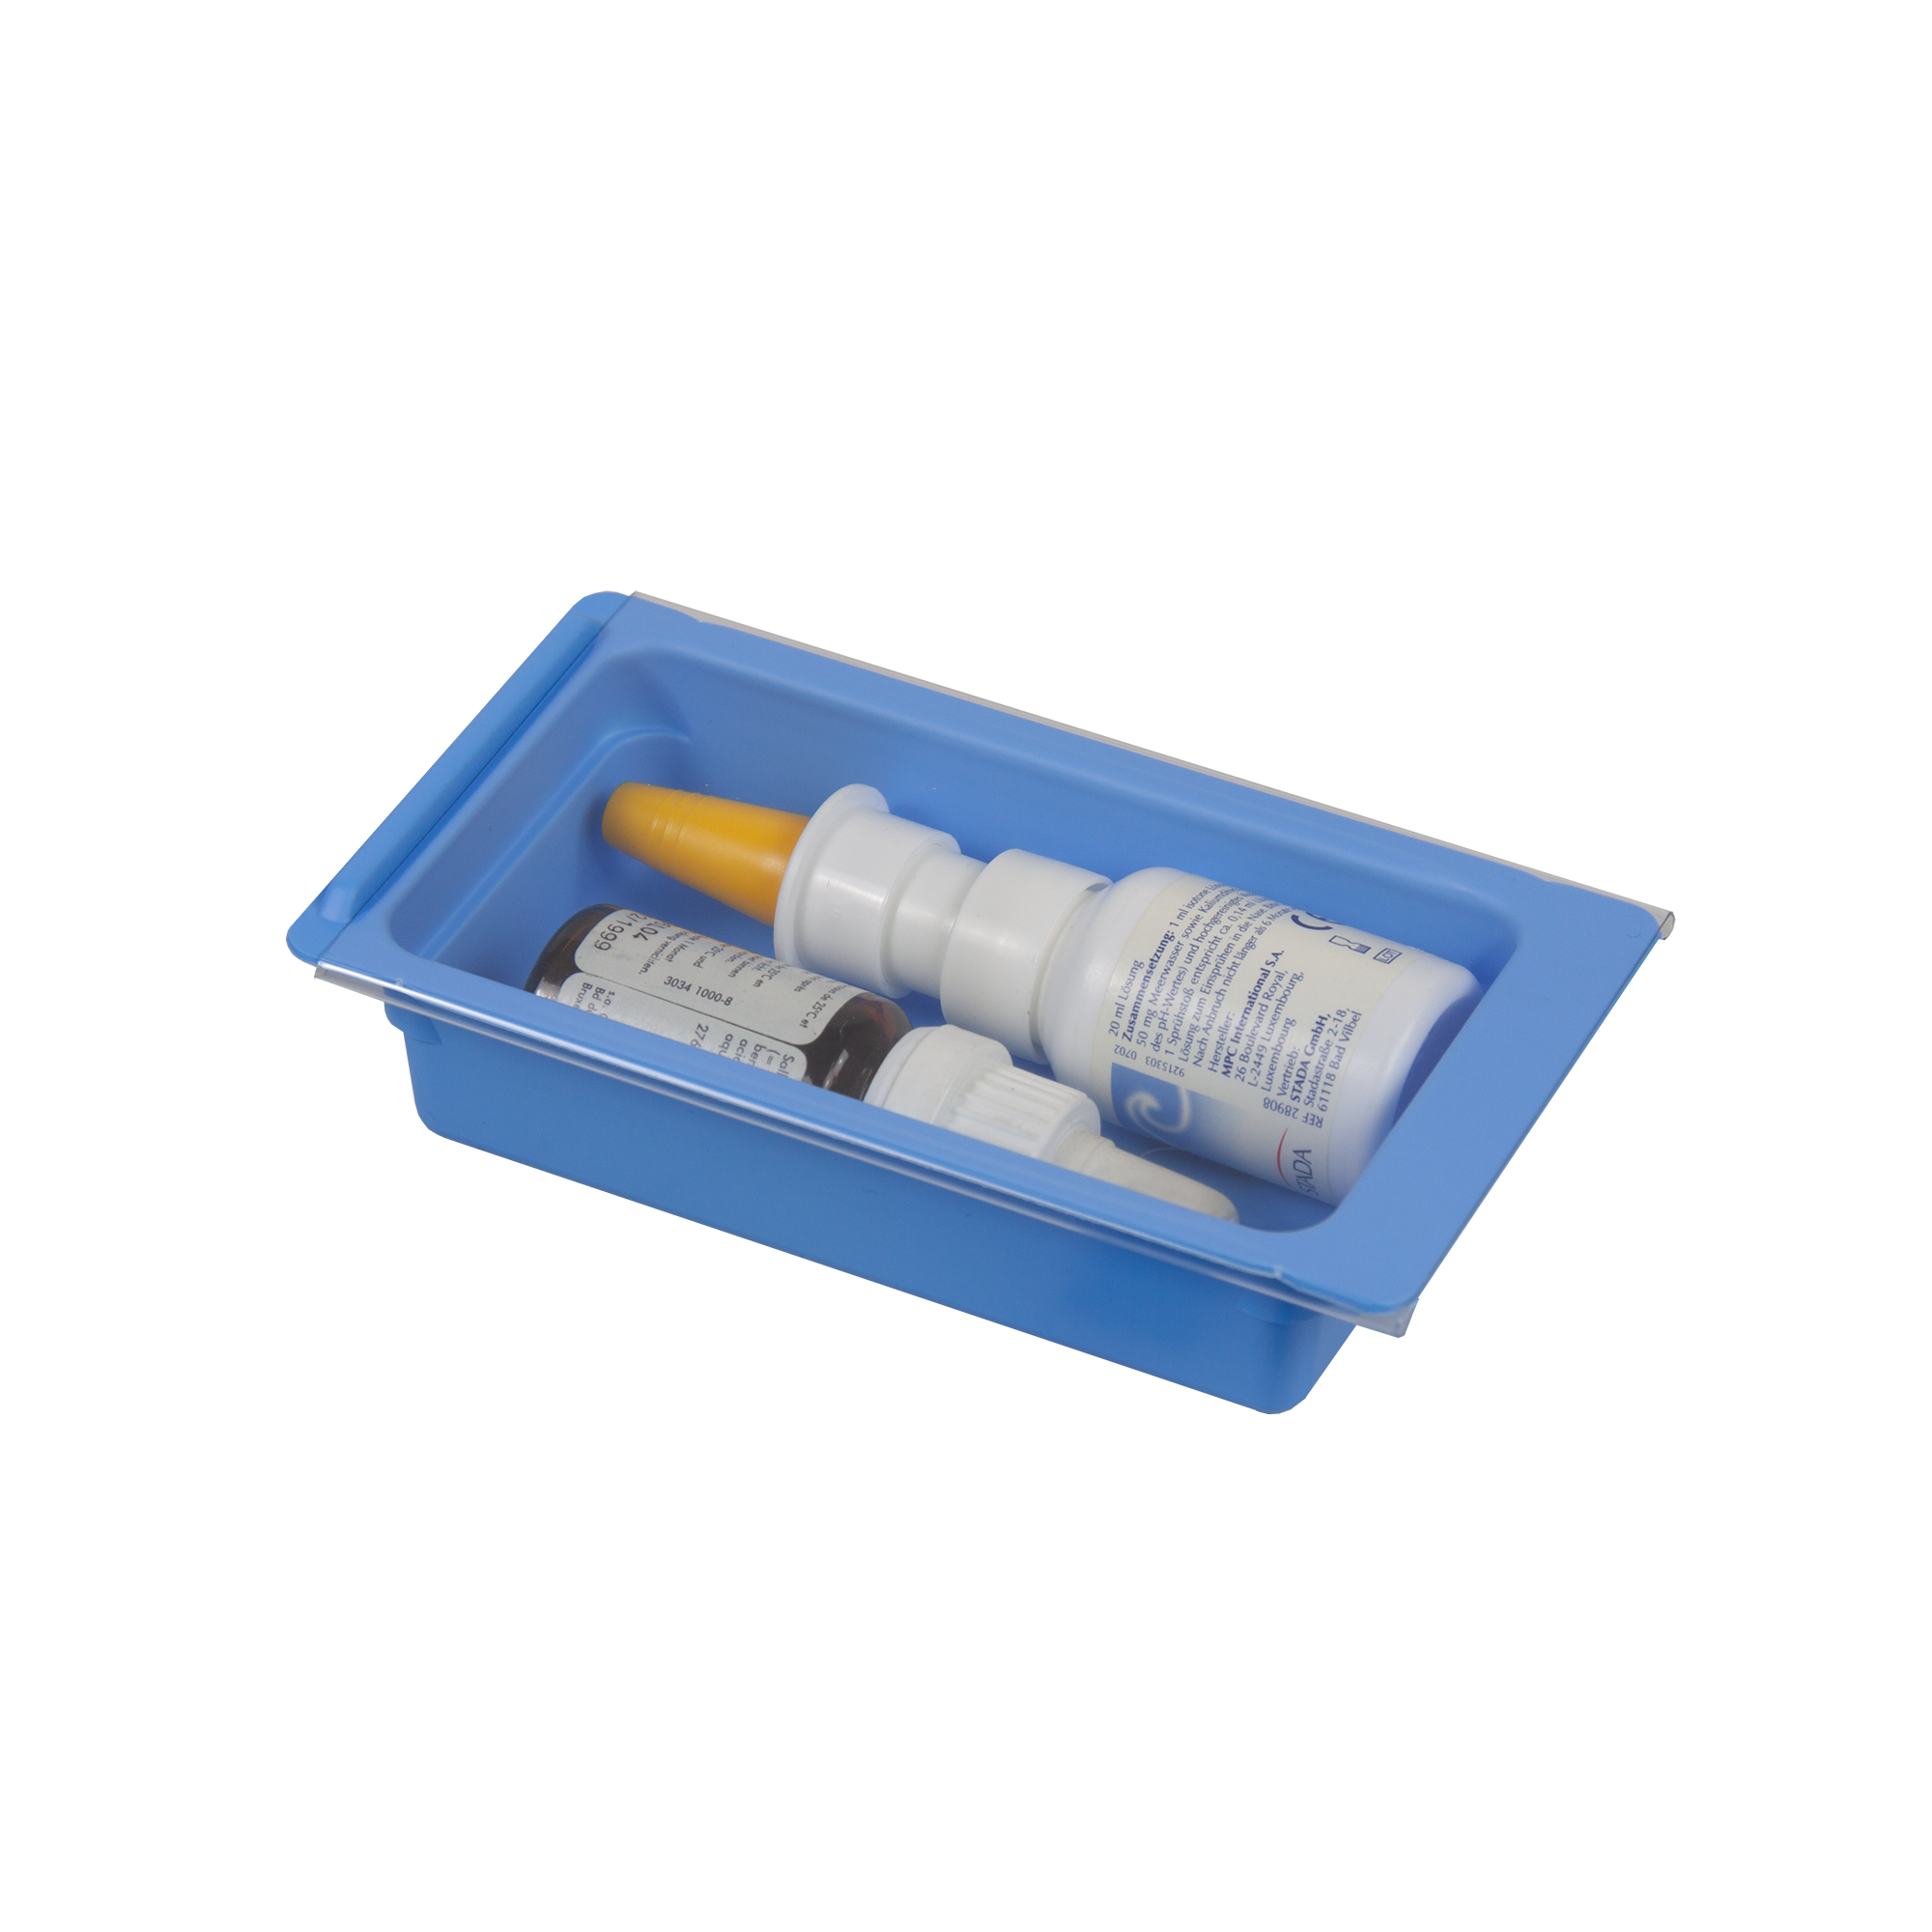 Caja para almacenamiento - 111/119 - Wiegand AG - para medicamentos / de  plástico / con tapa